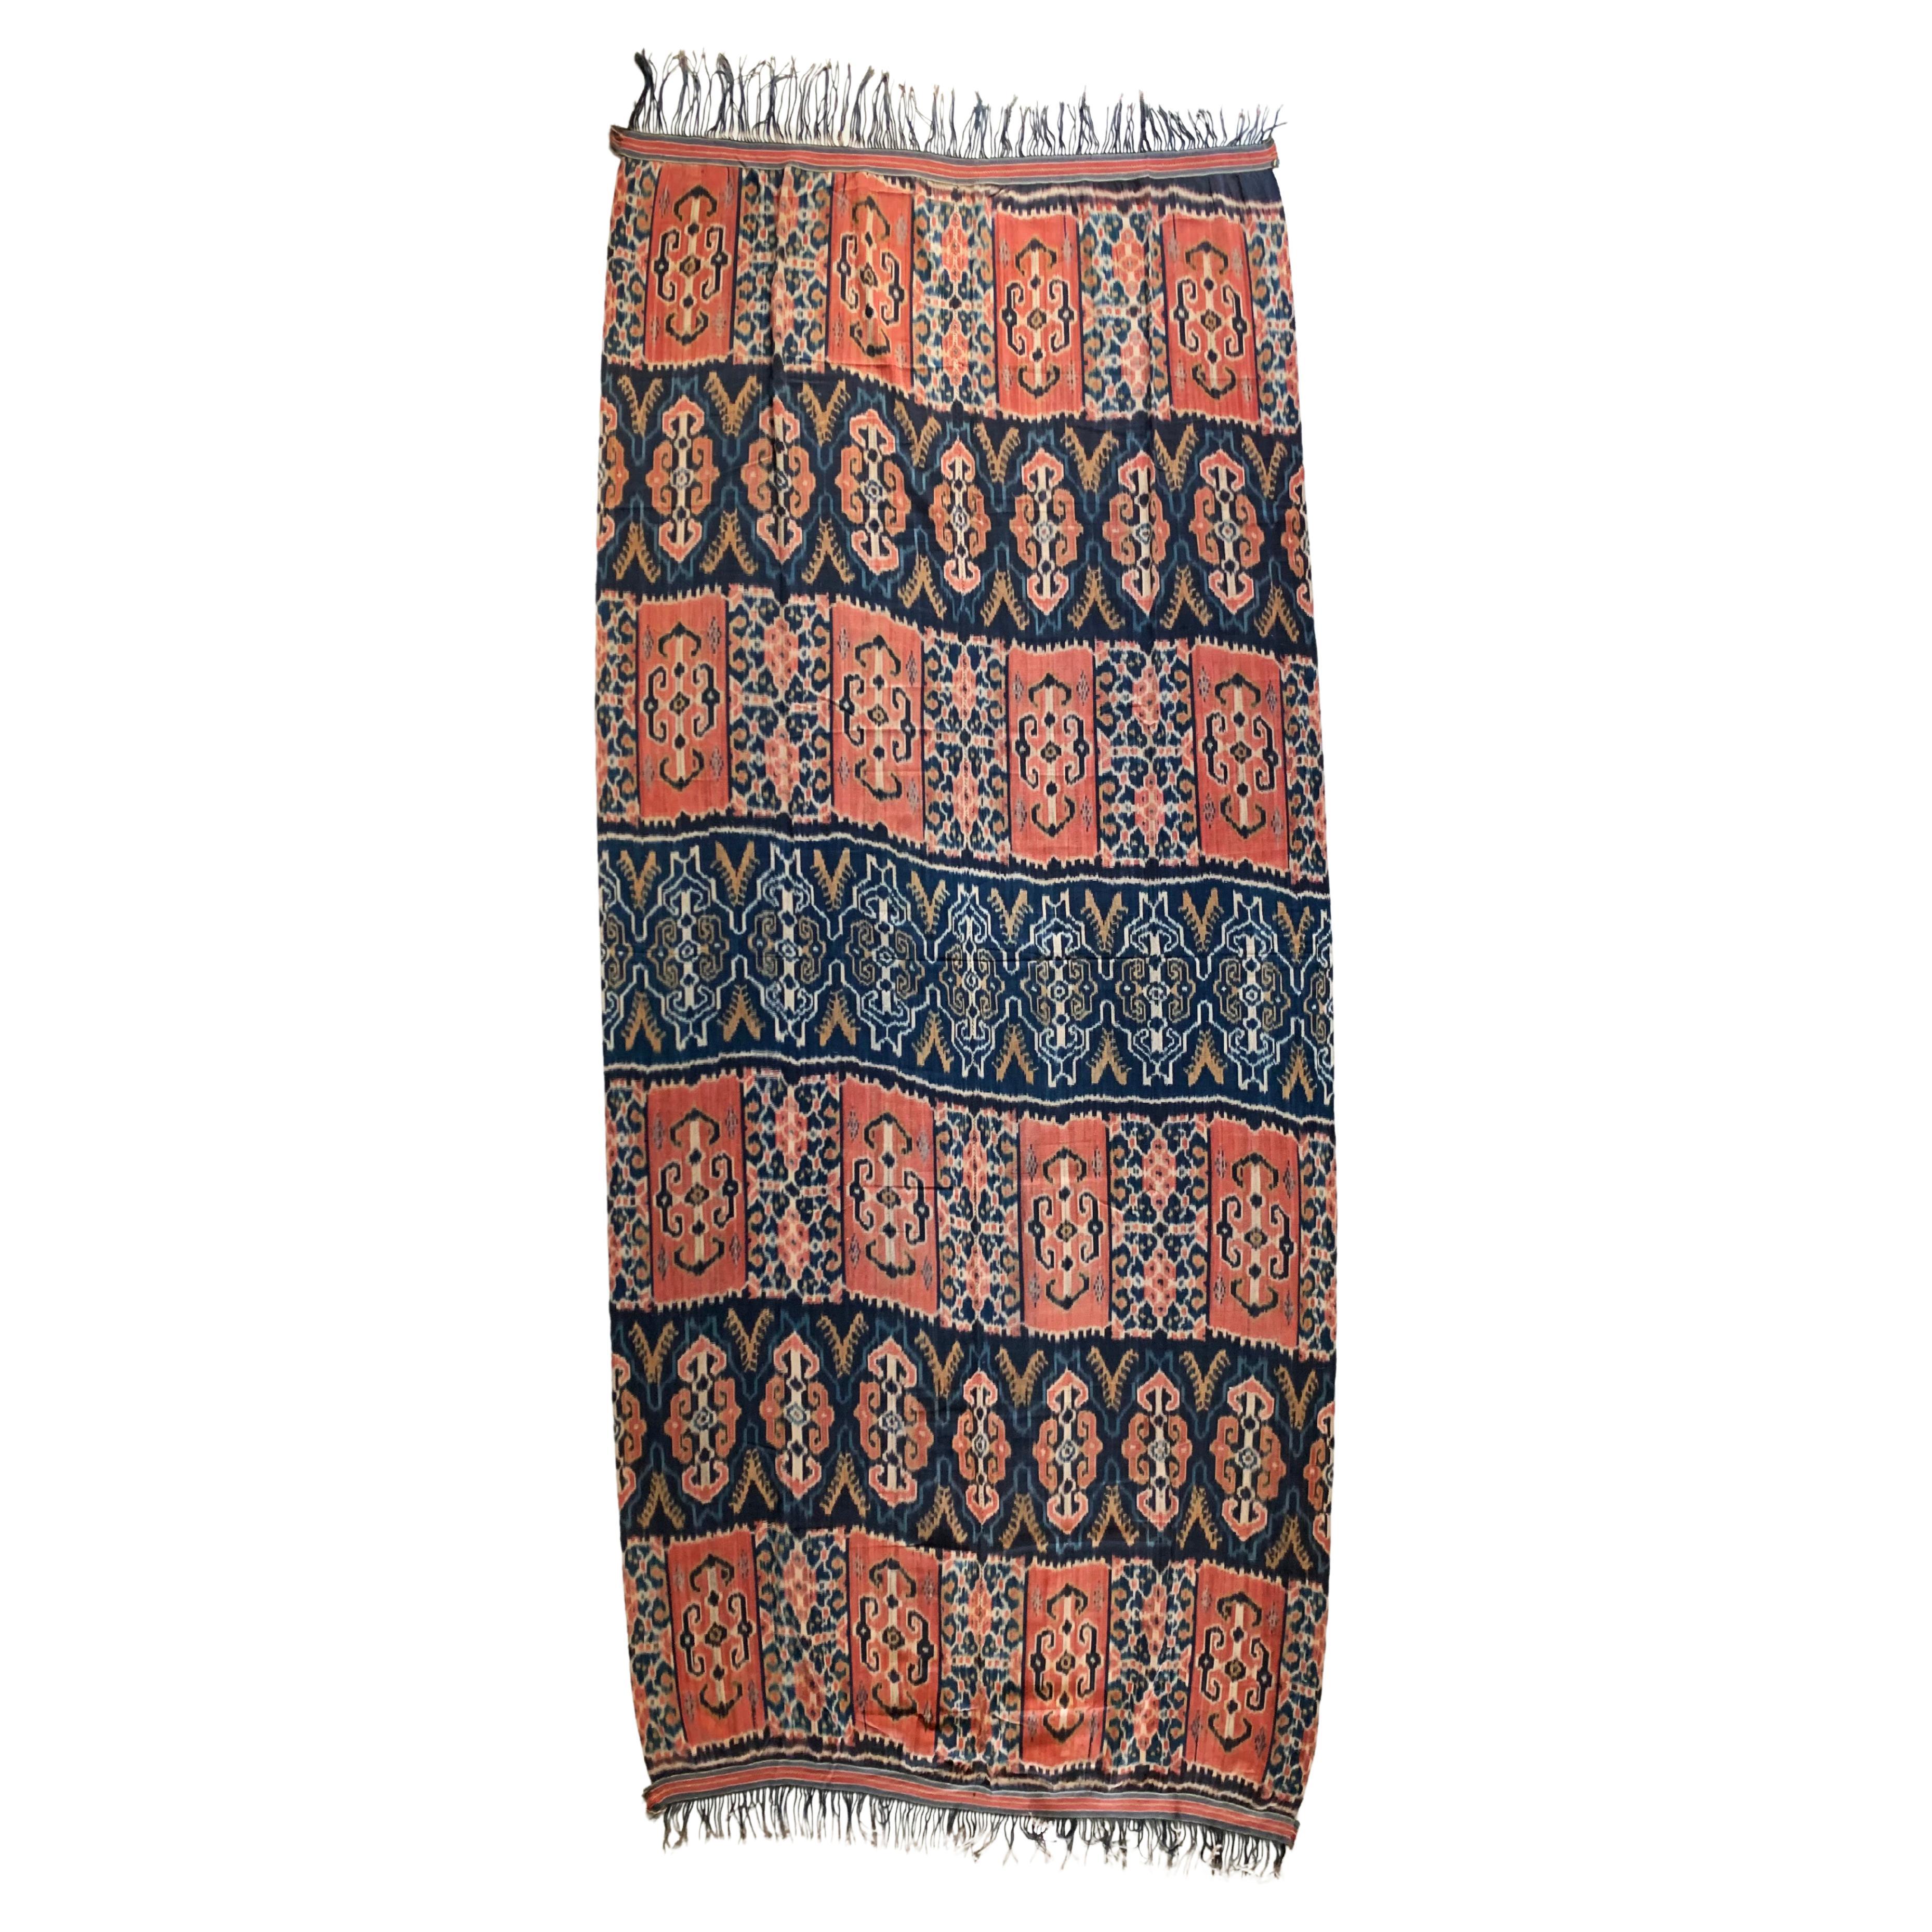 Ikat-Textil von Sumba-Insel mit atemberaubenden Stammesmotiven, Indonesien